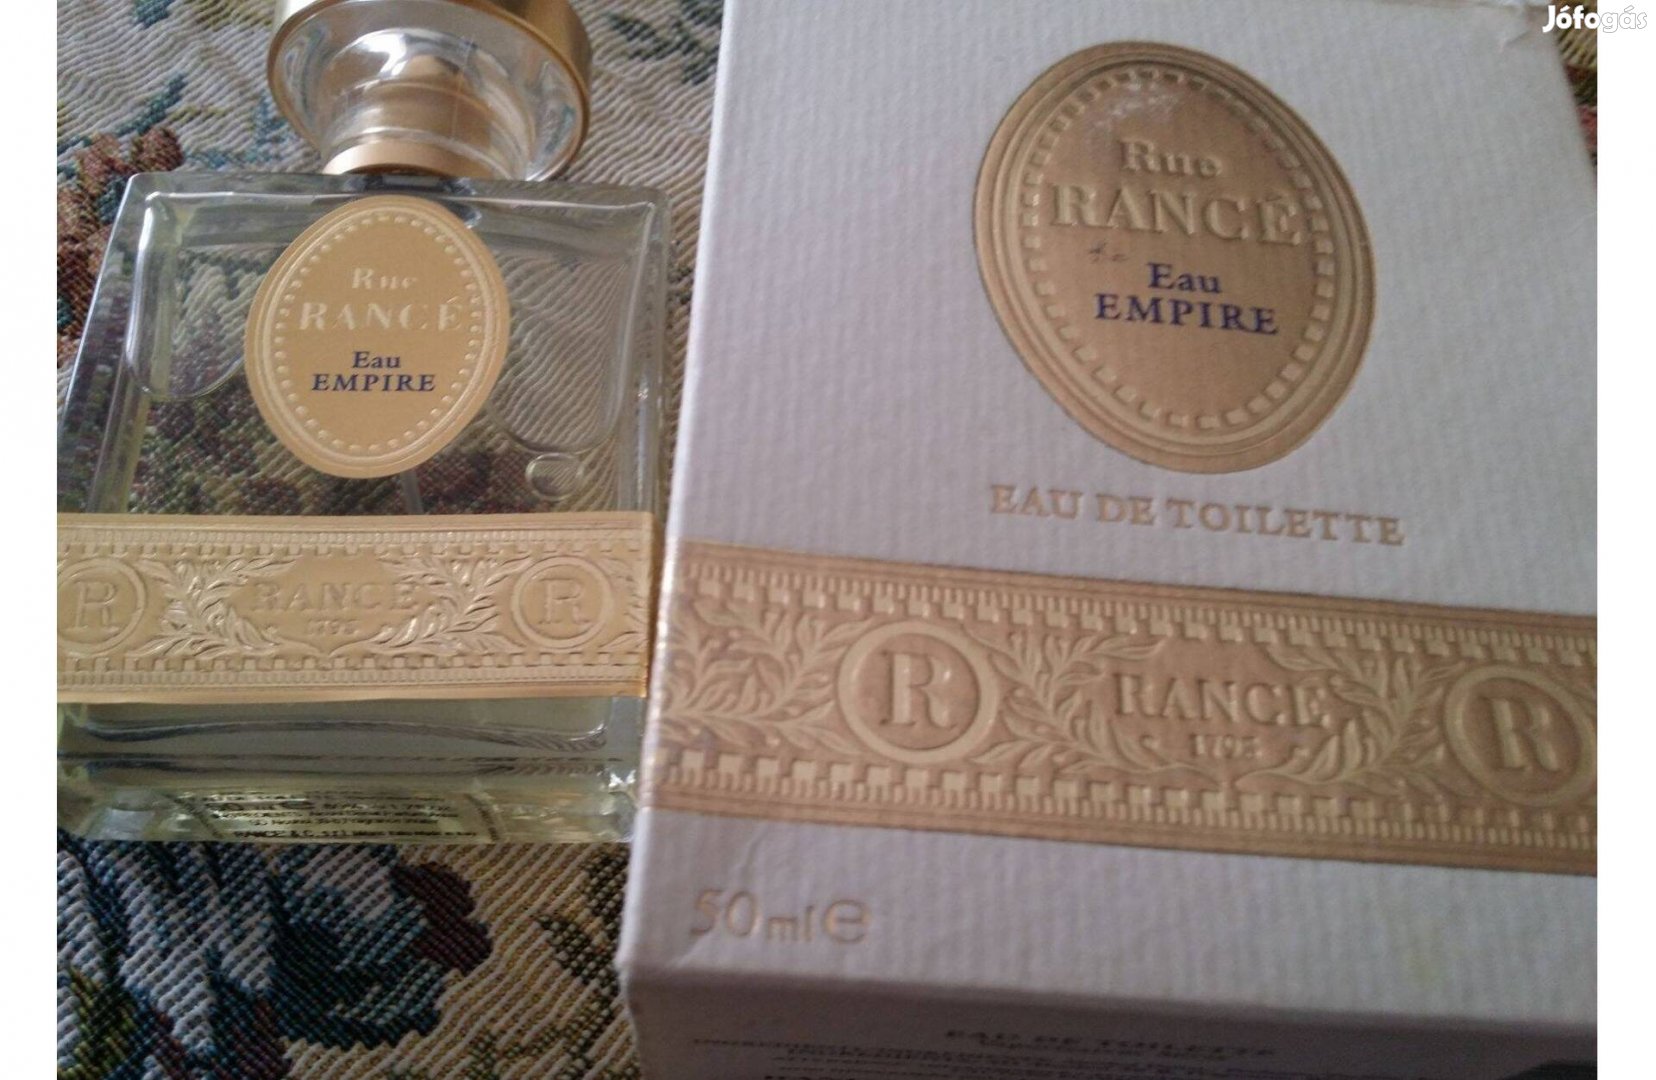 Eredeti francia parfüm